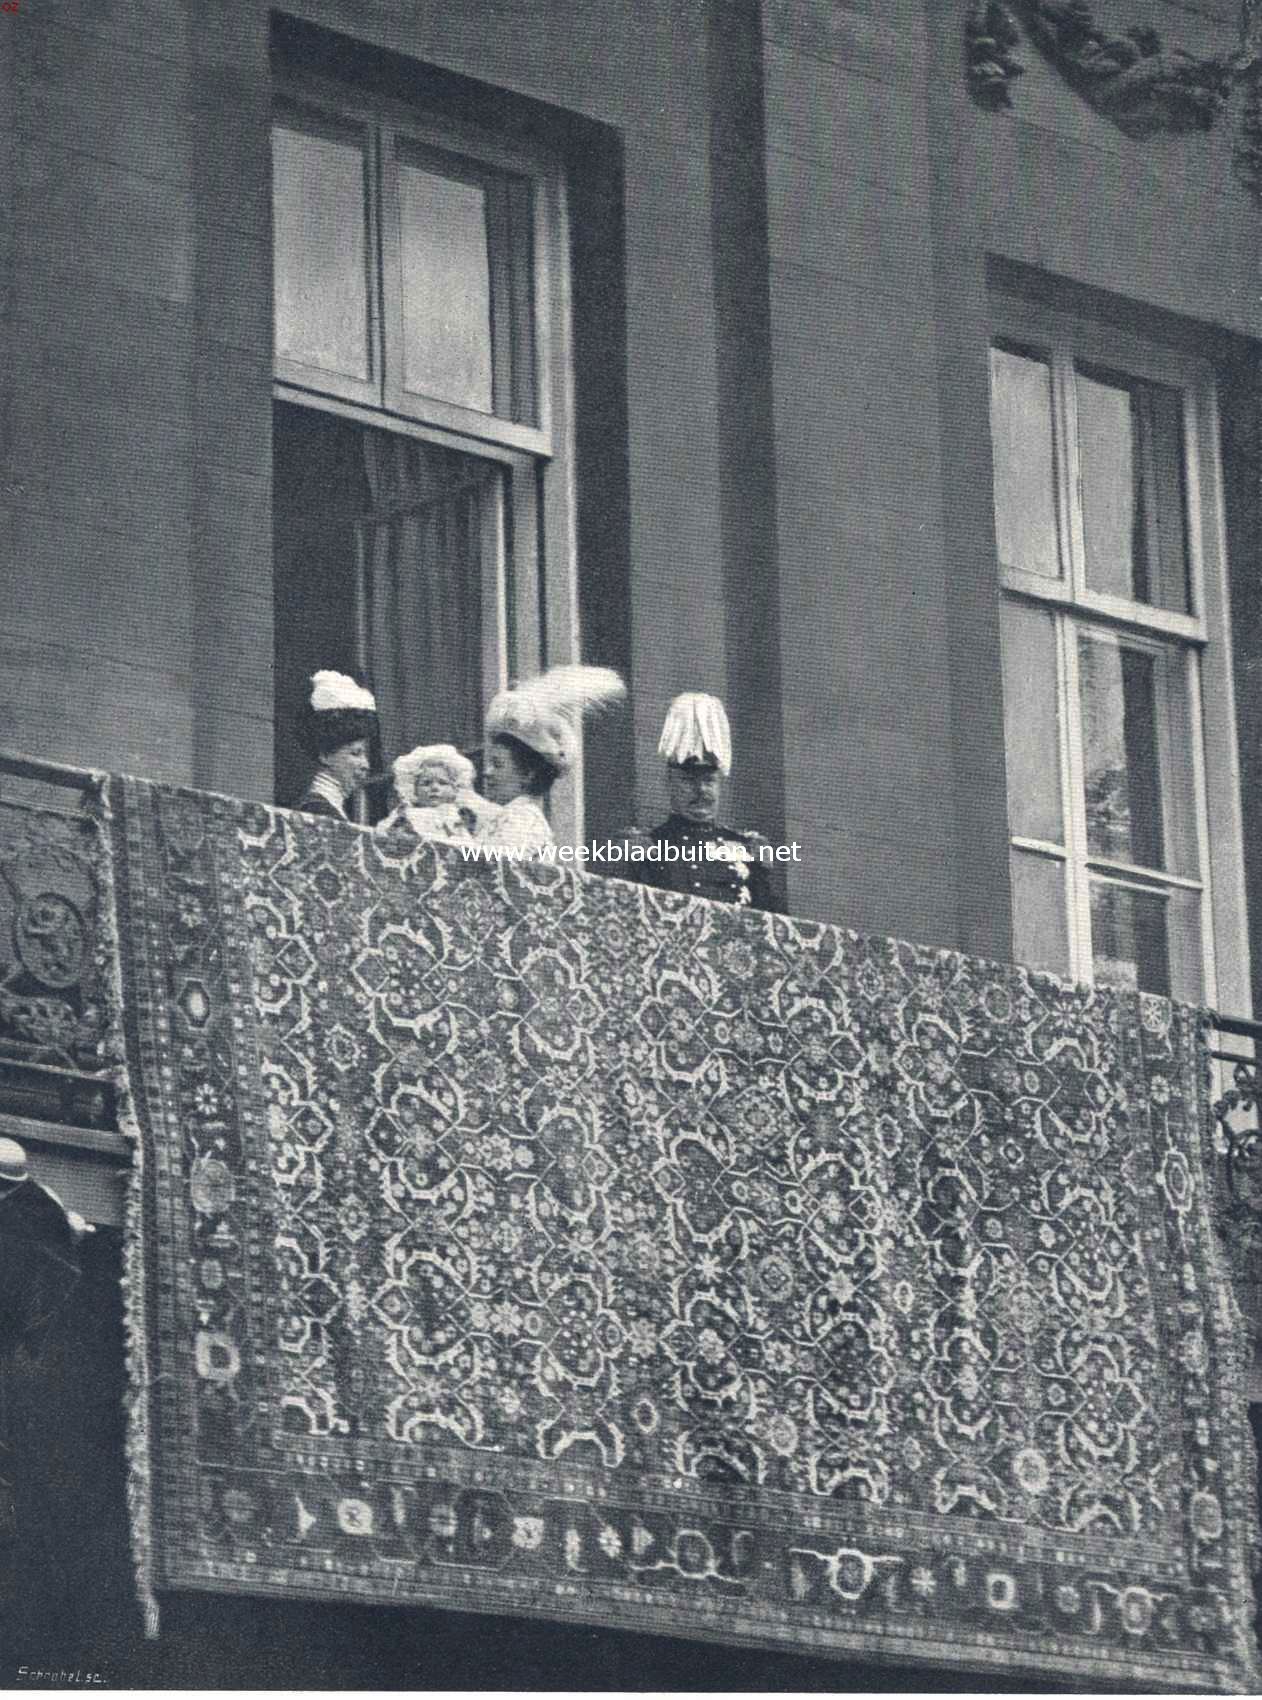 Het koninklijk bezoek aan Amsterdam. De koninklijke familie op het balcon van het paleis